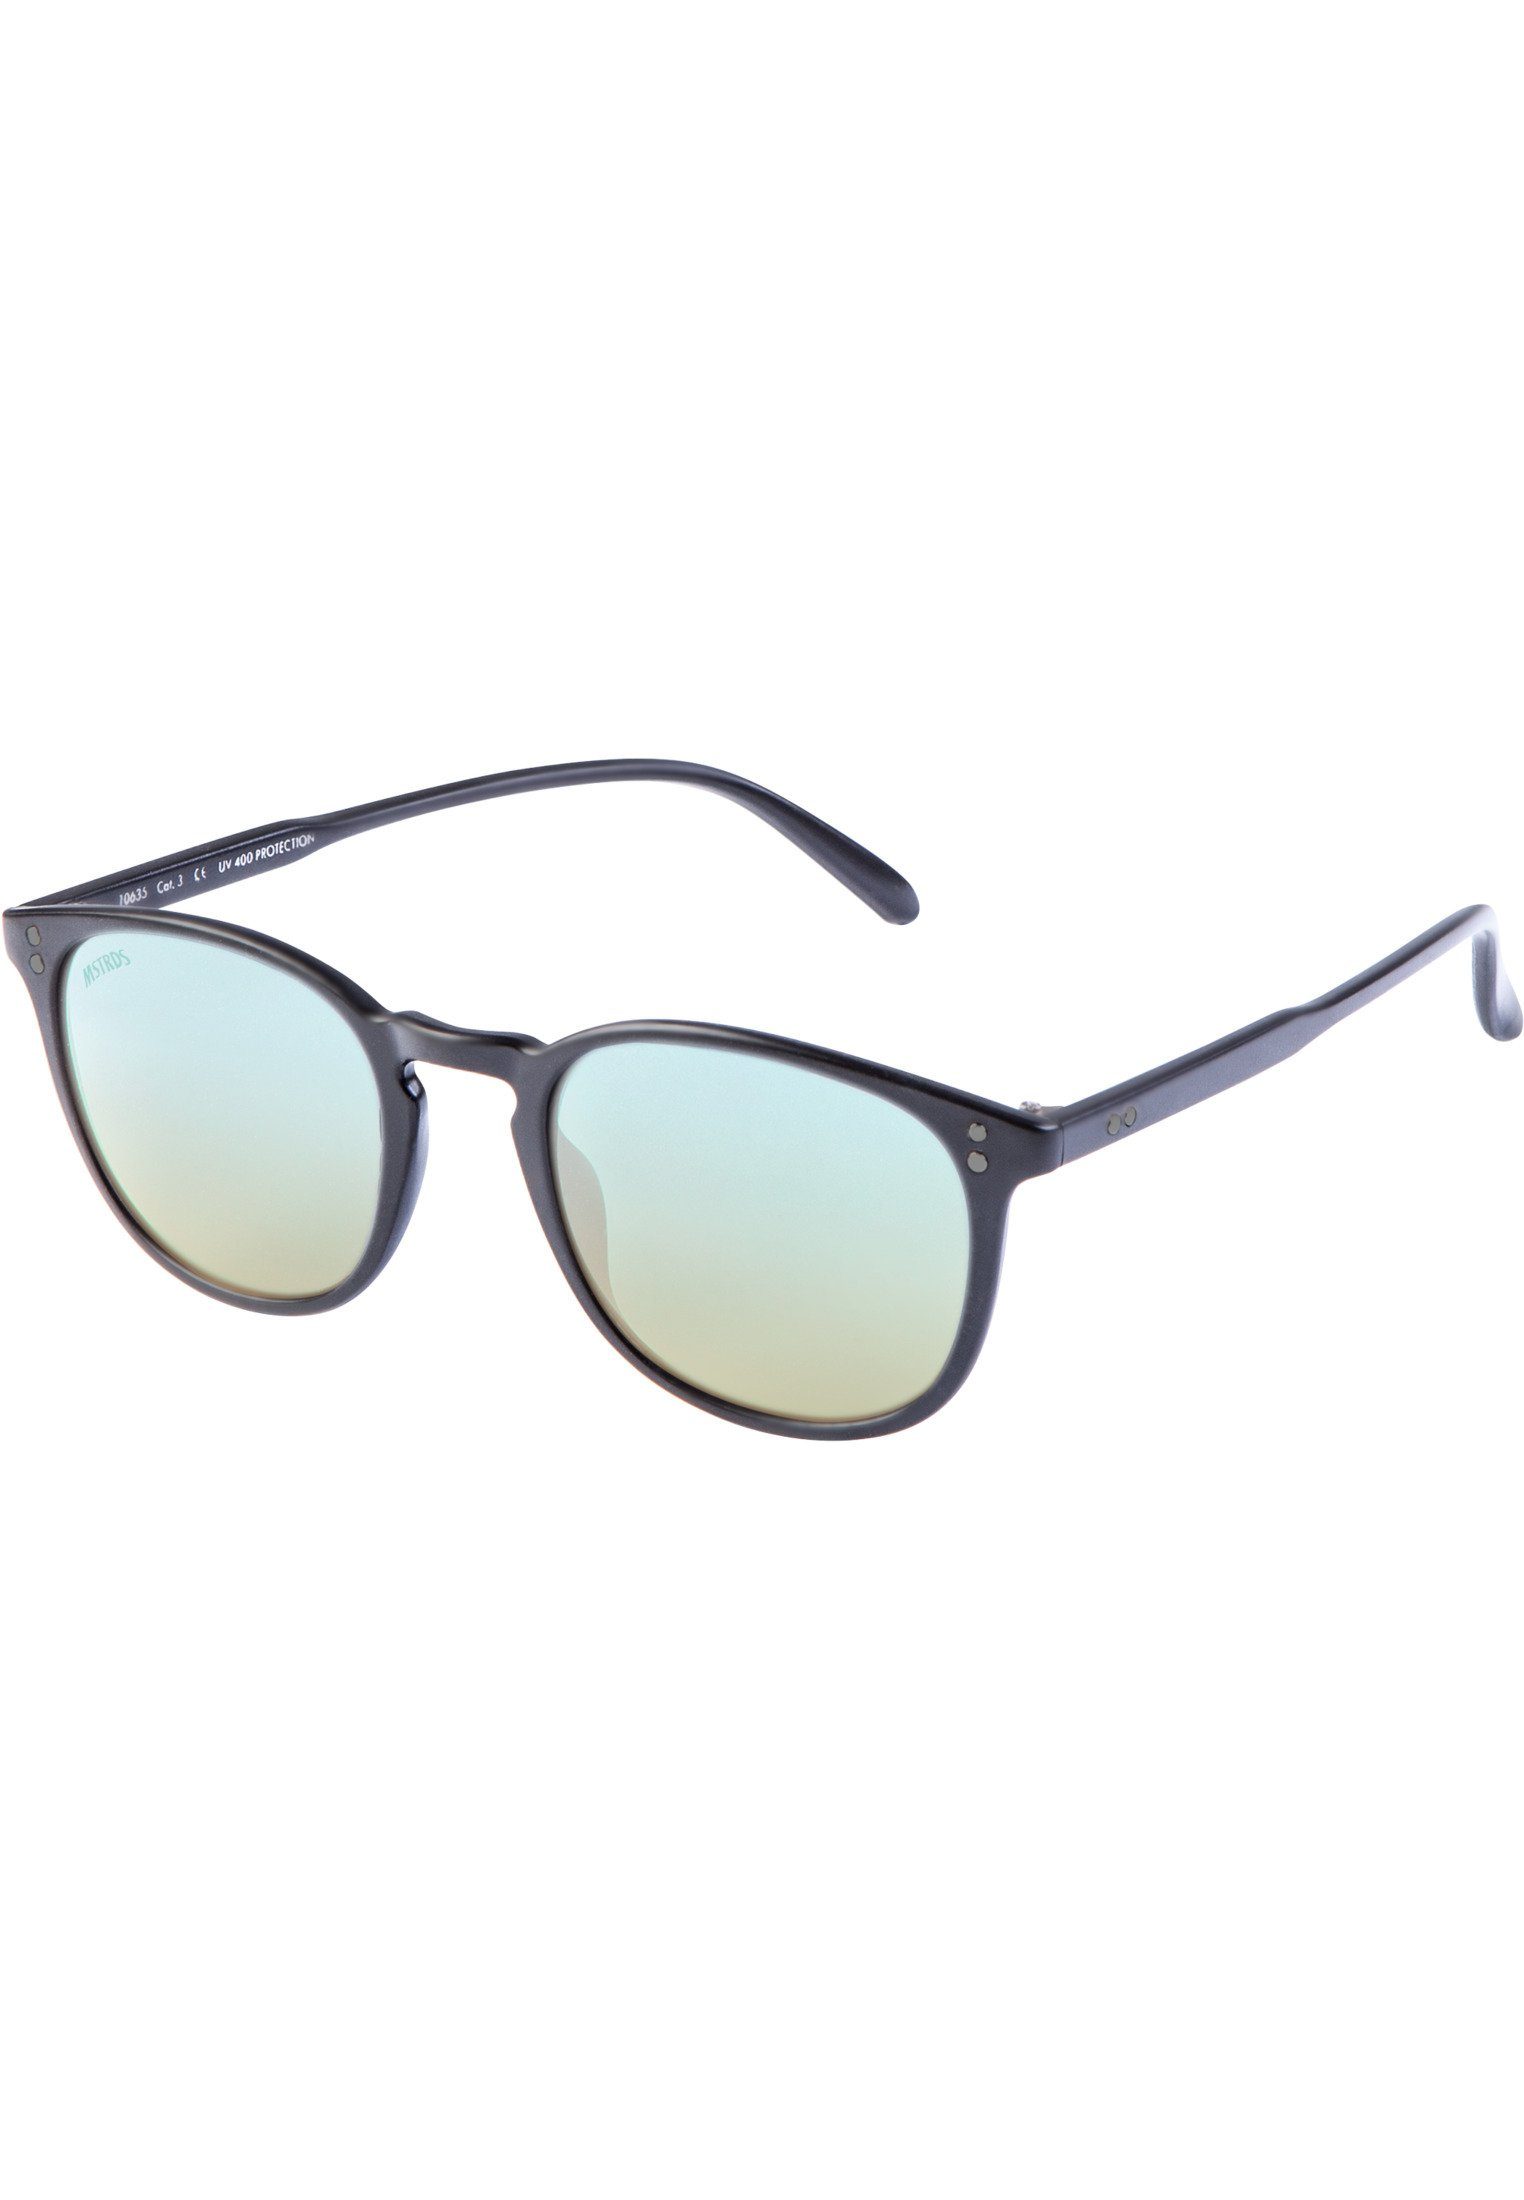 Sunglasses MSTRDS blk/blue Accessoires Arthur Youth Sonnenbrille